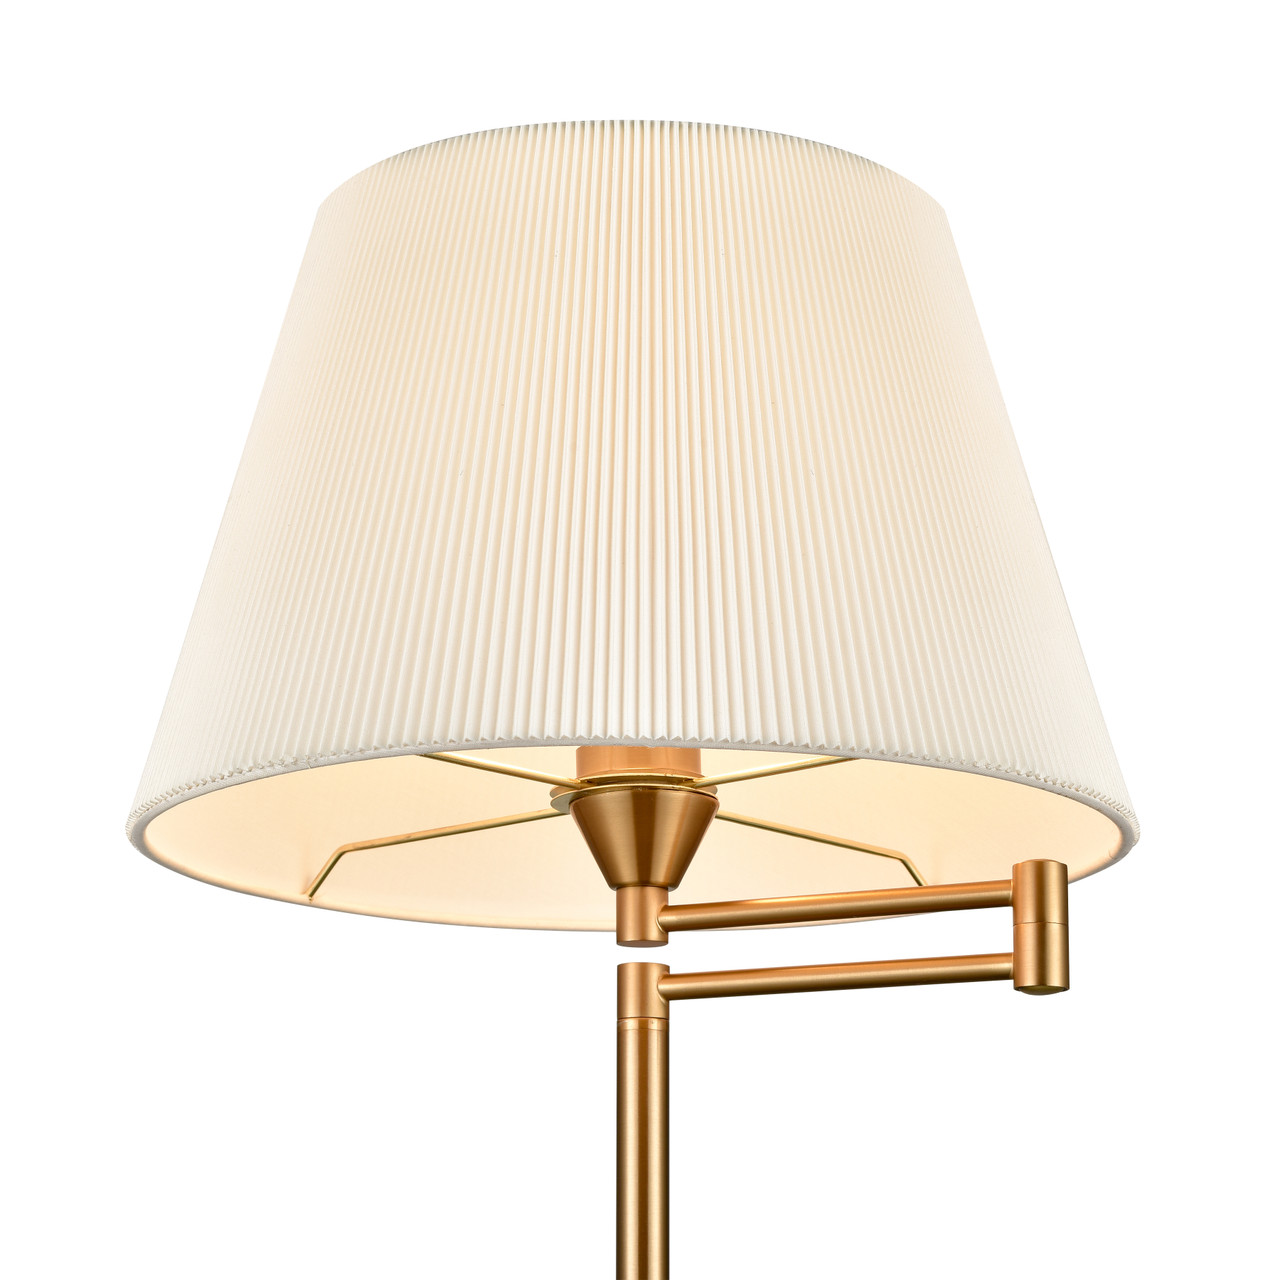 ELK HOME S0019-9606 Scope 65'' High 1-Light Floor Lamp - Aged Brass